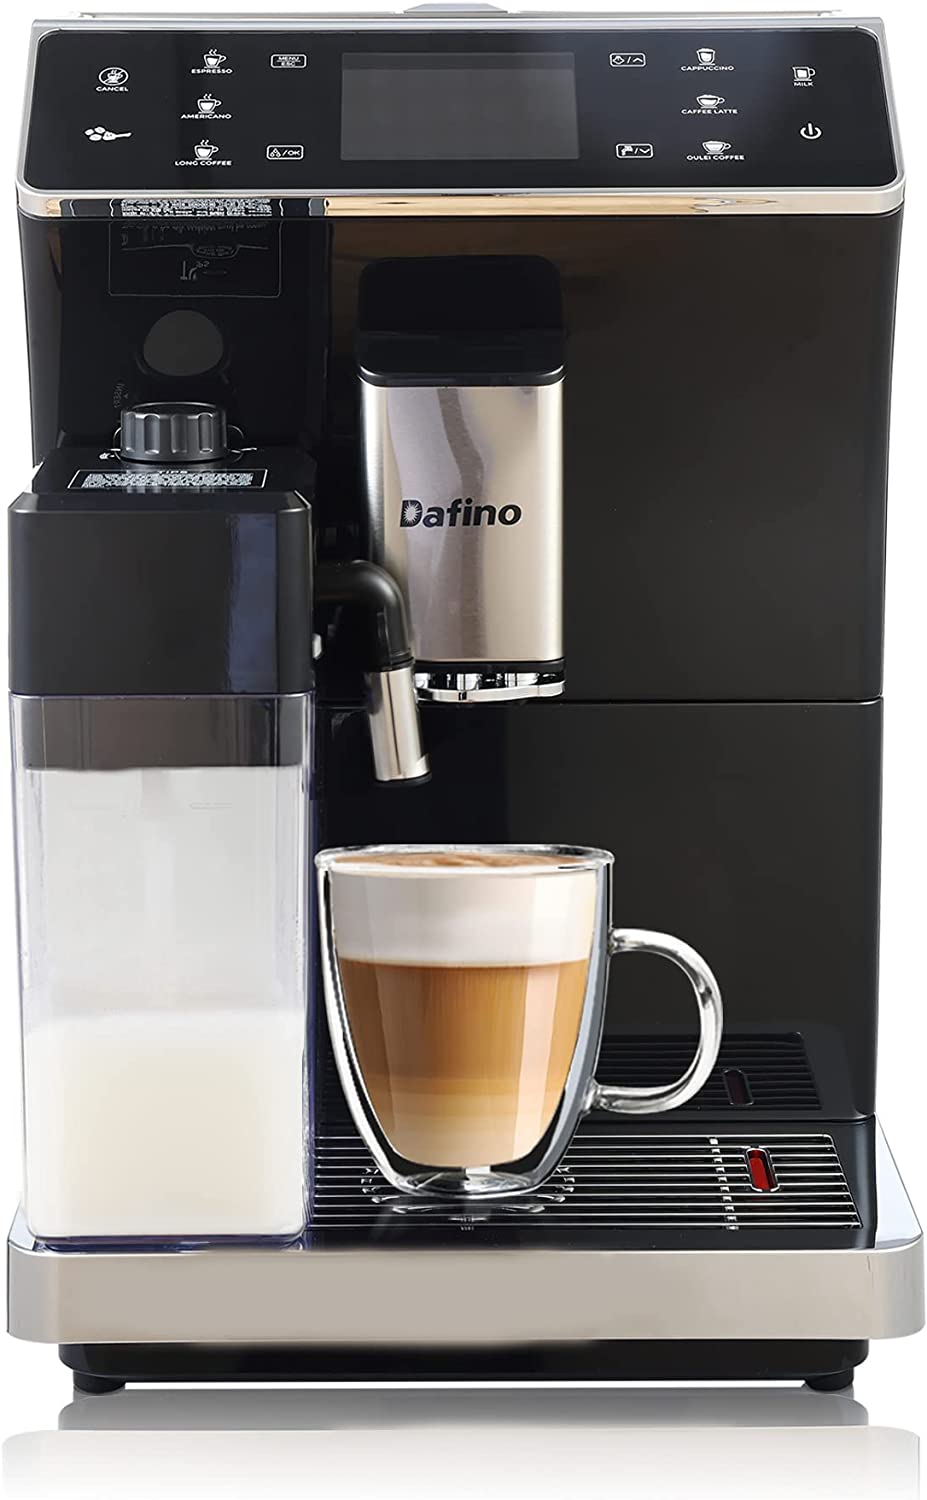 Dafino 202 Fully Automatic Espresso Machine